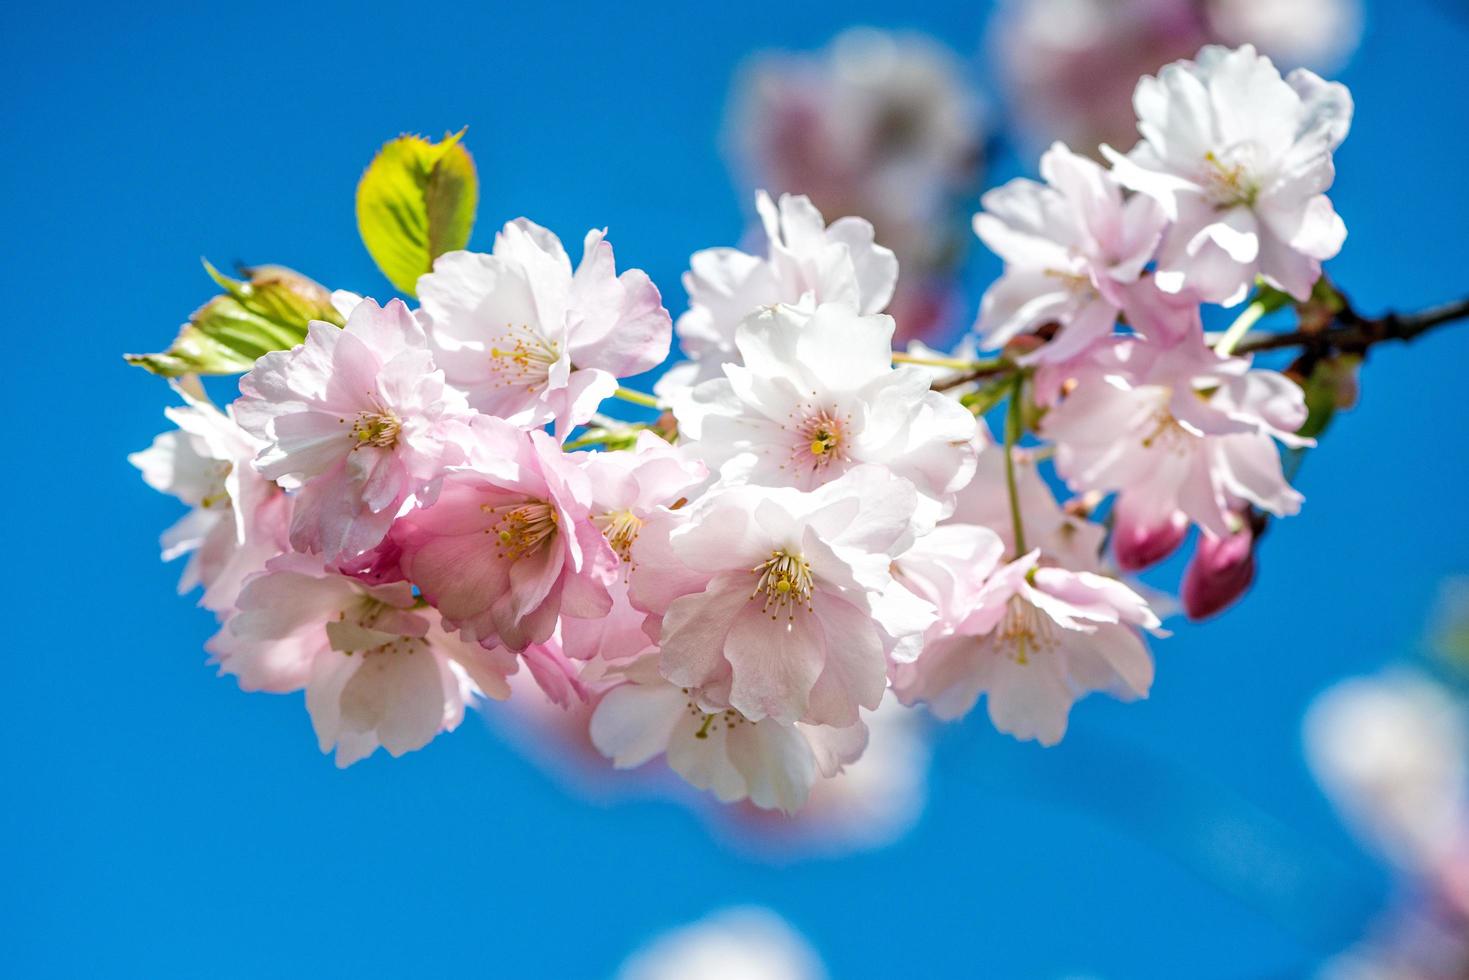 photographie rapprochée à mise au point sélective. belle fleur de cerisier sakura au printemps sur ciel bleu. photo